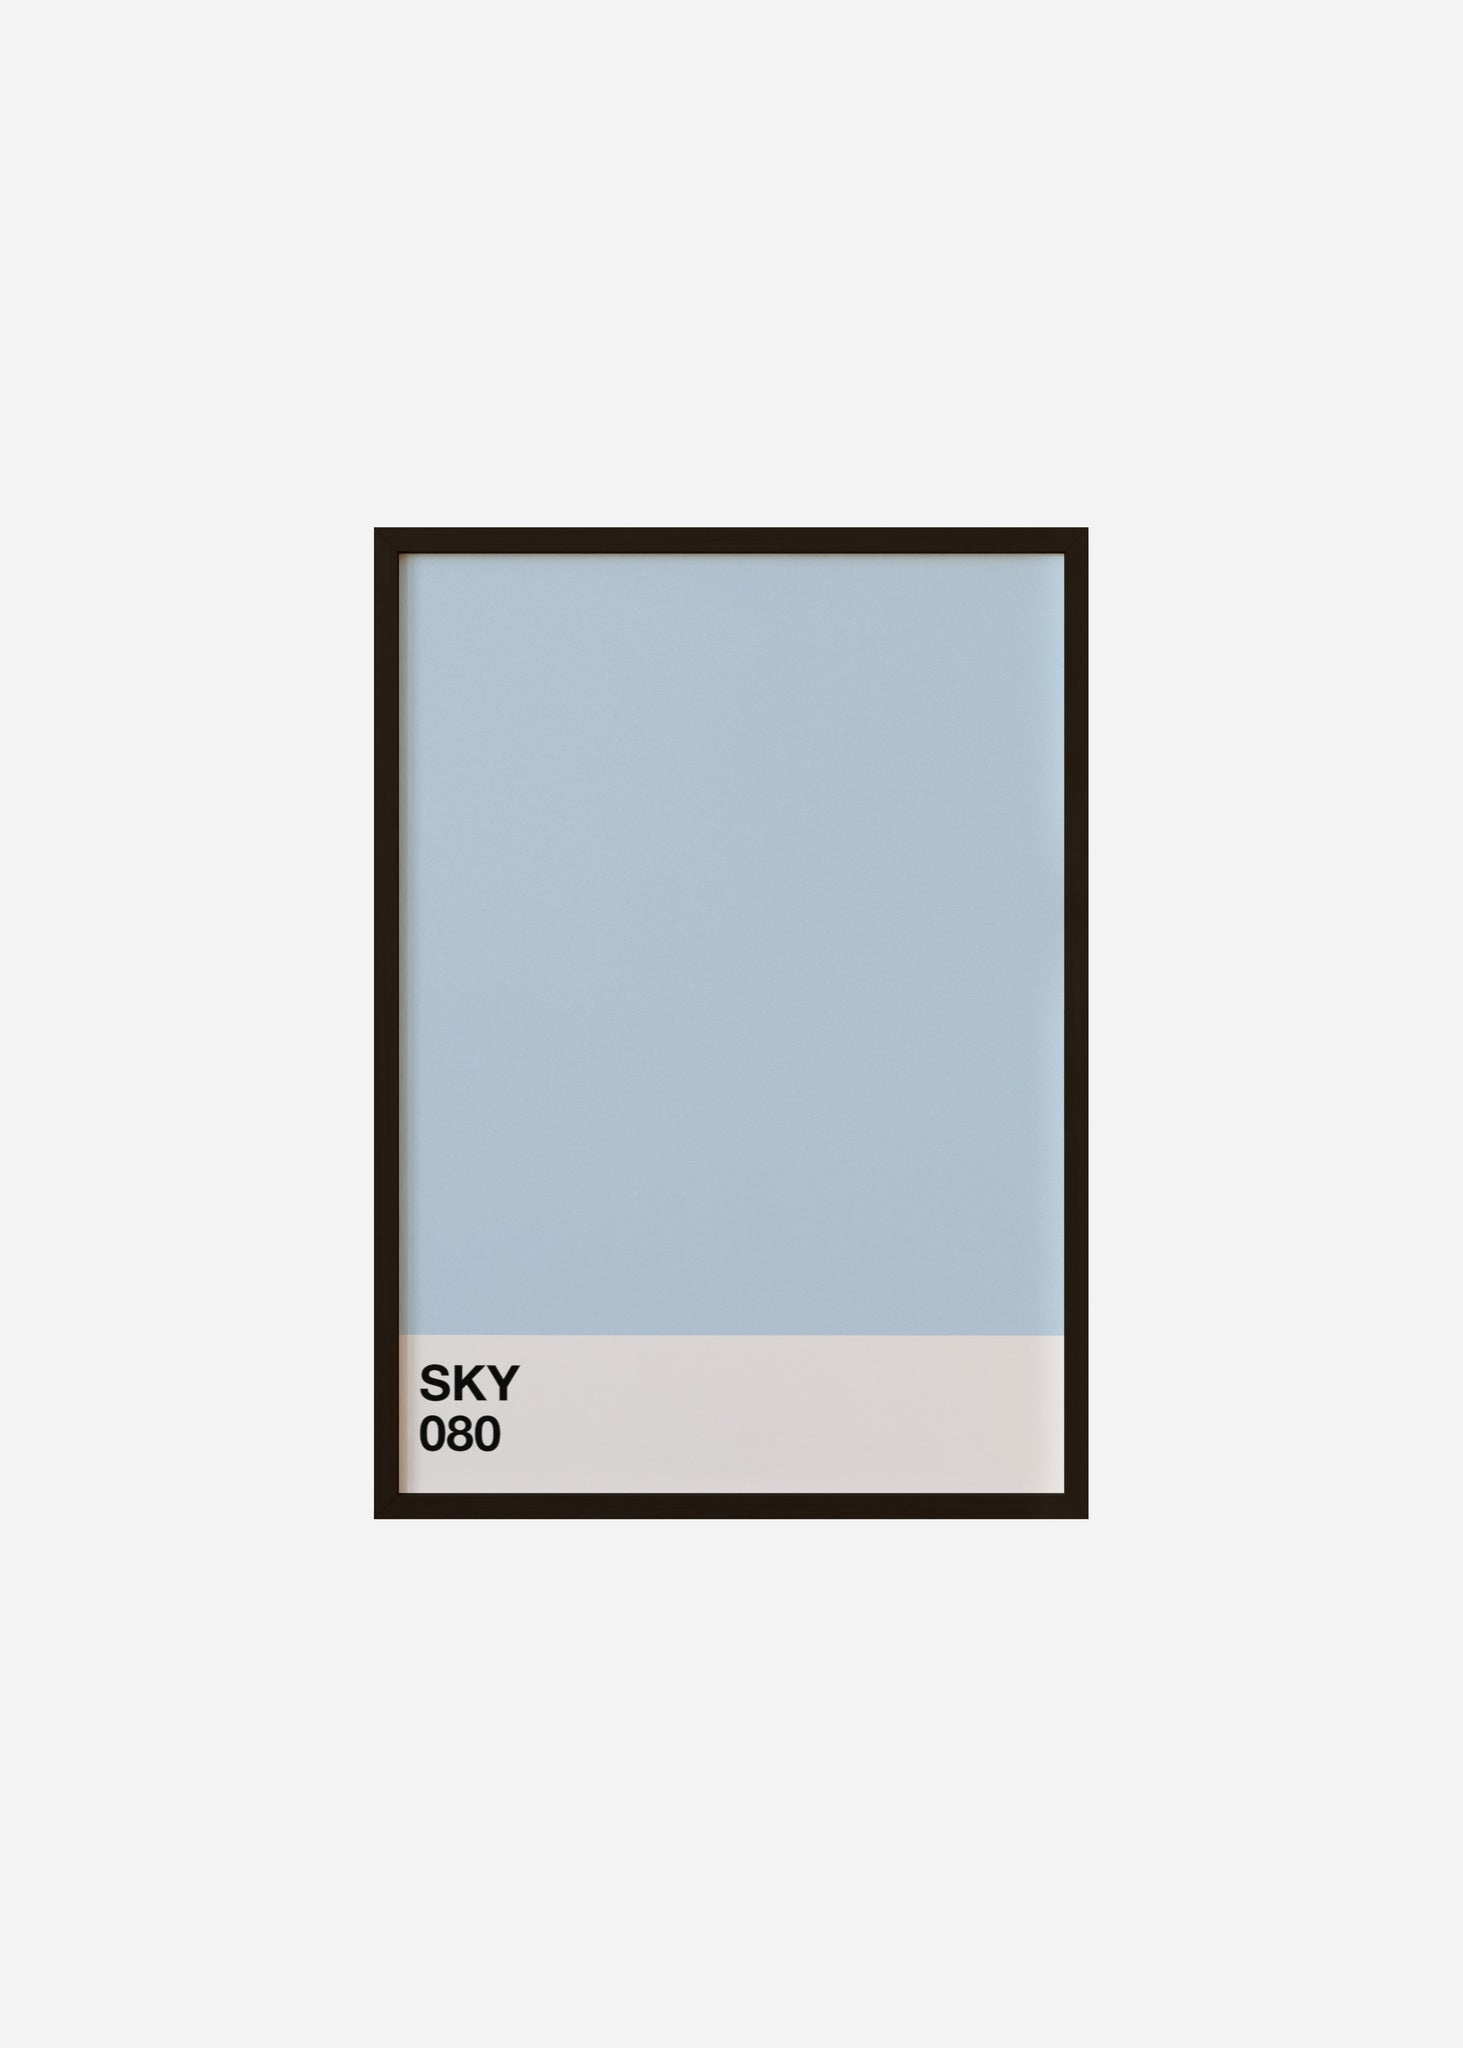 sky Framed Print